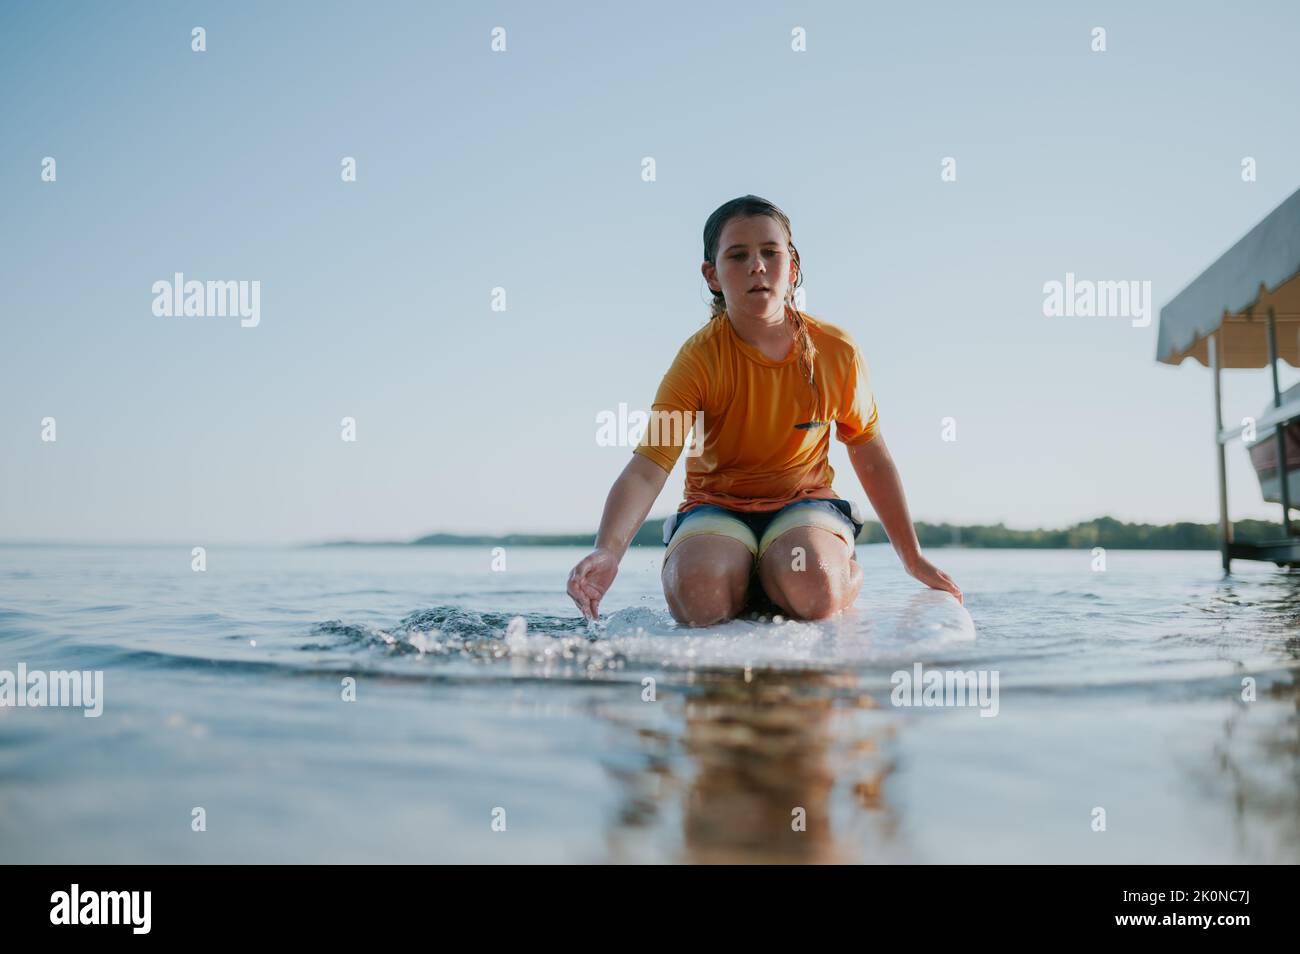 Blick aus der unteren Perspektive auf einen Jungen, der auf dem Paddelbrett sitzt und in Richtung des Betrachters paddelt Stockfoto